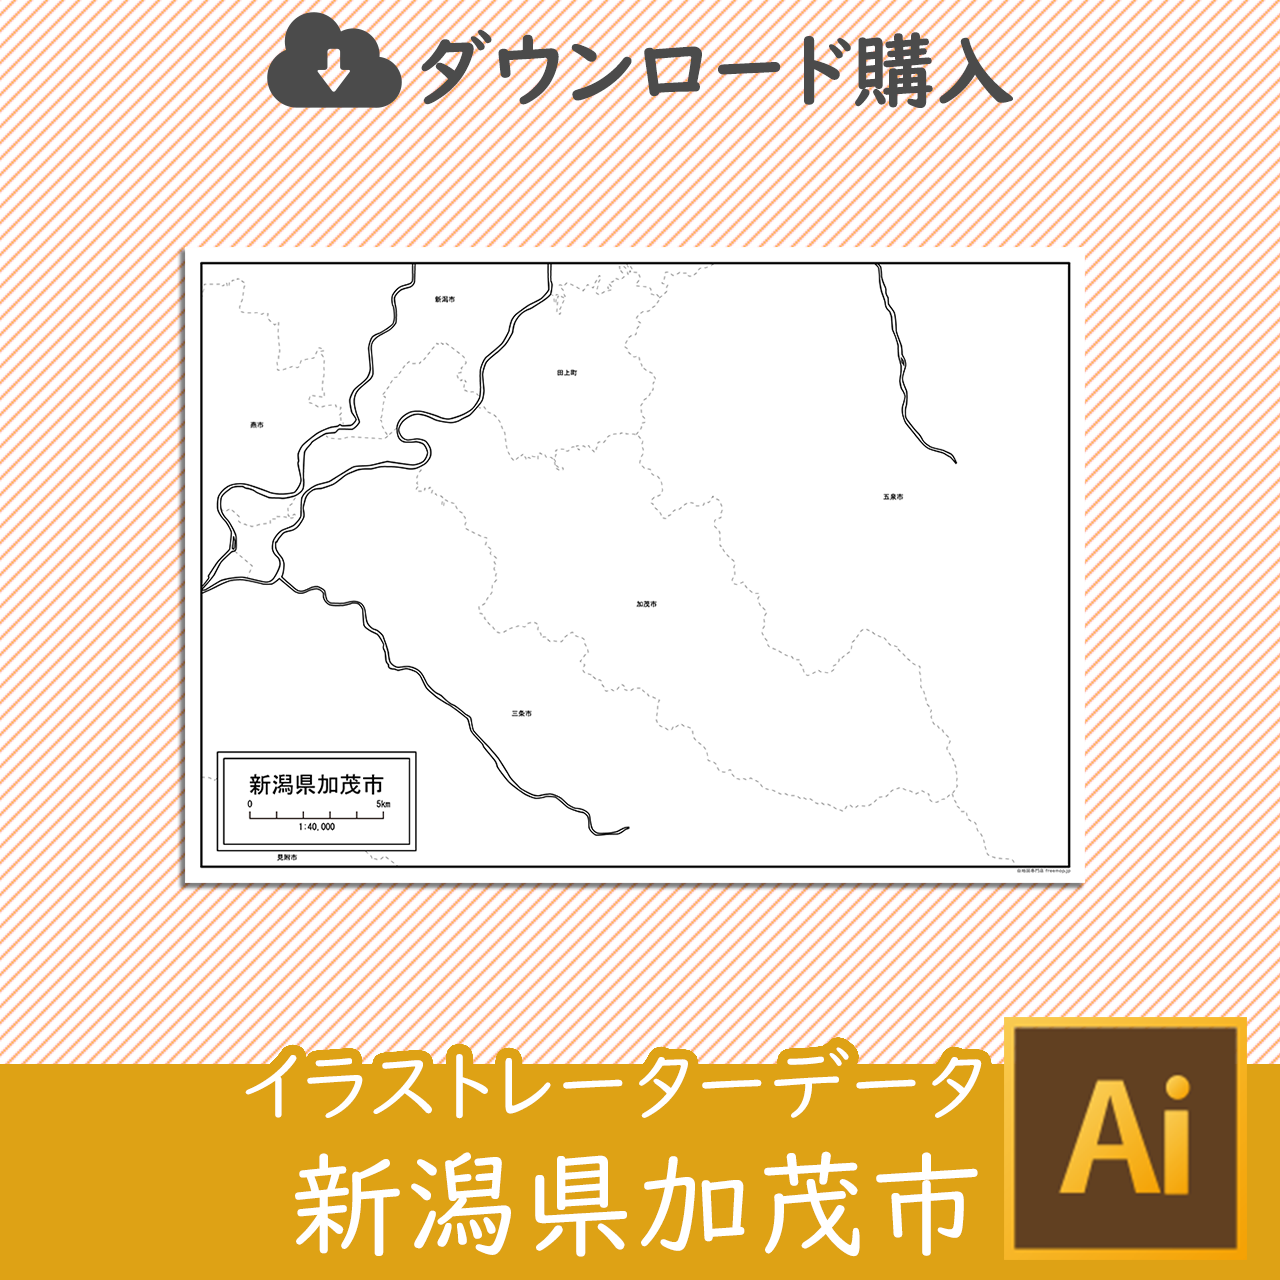 加茂市のaiデータのサムネイル画像